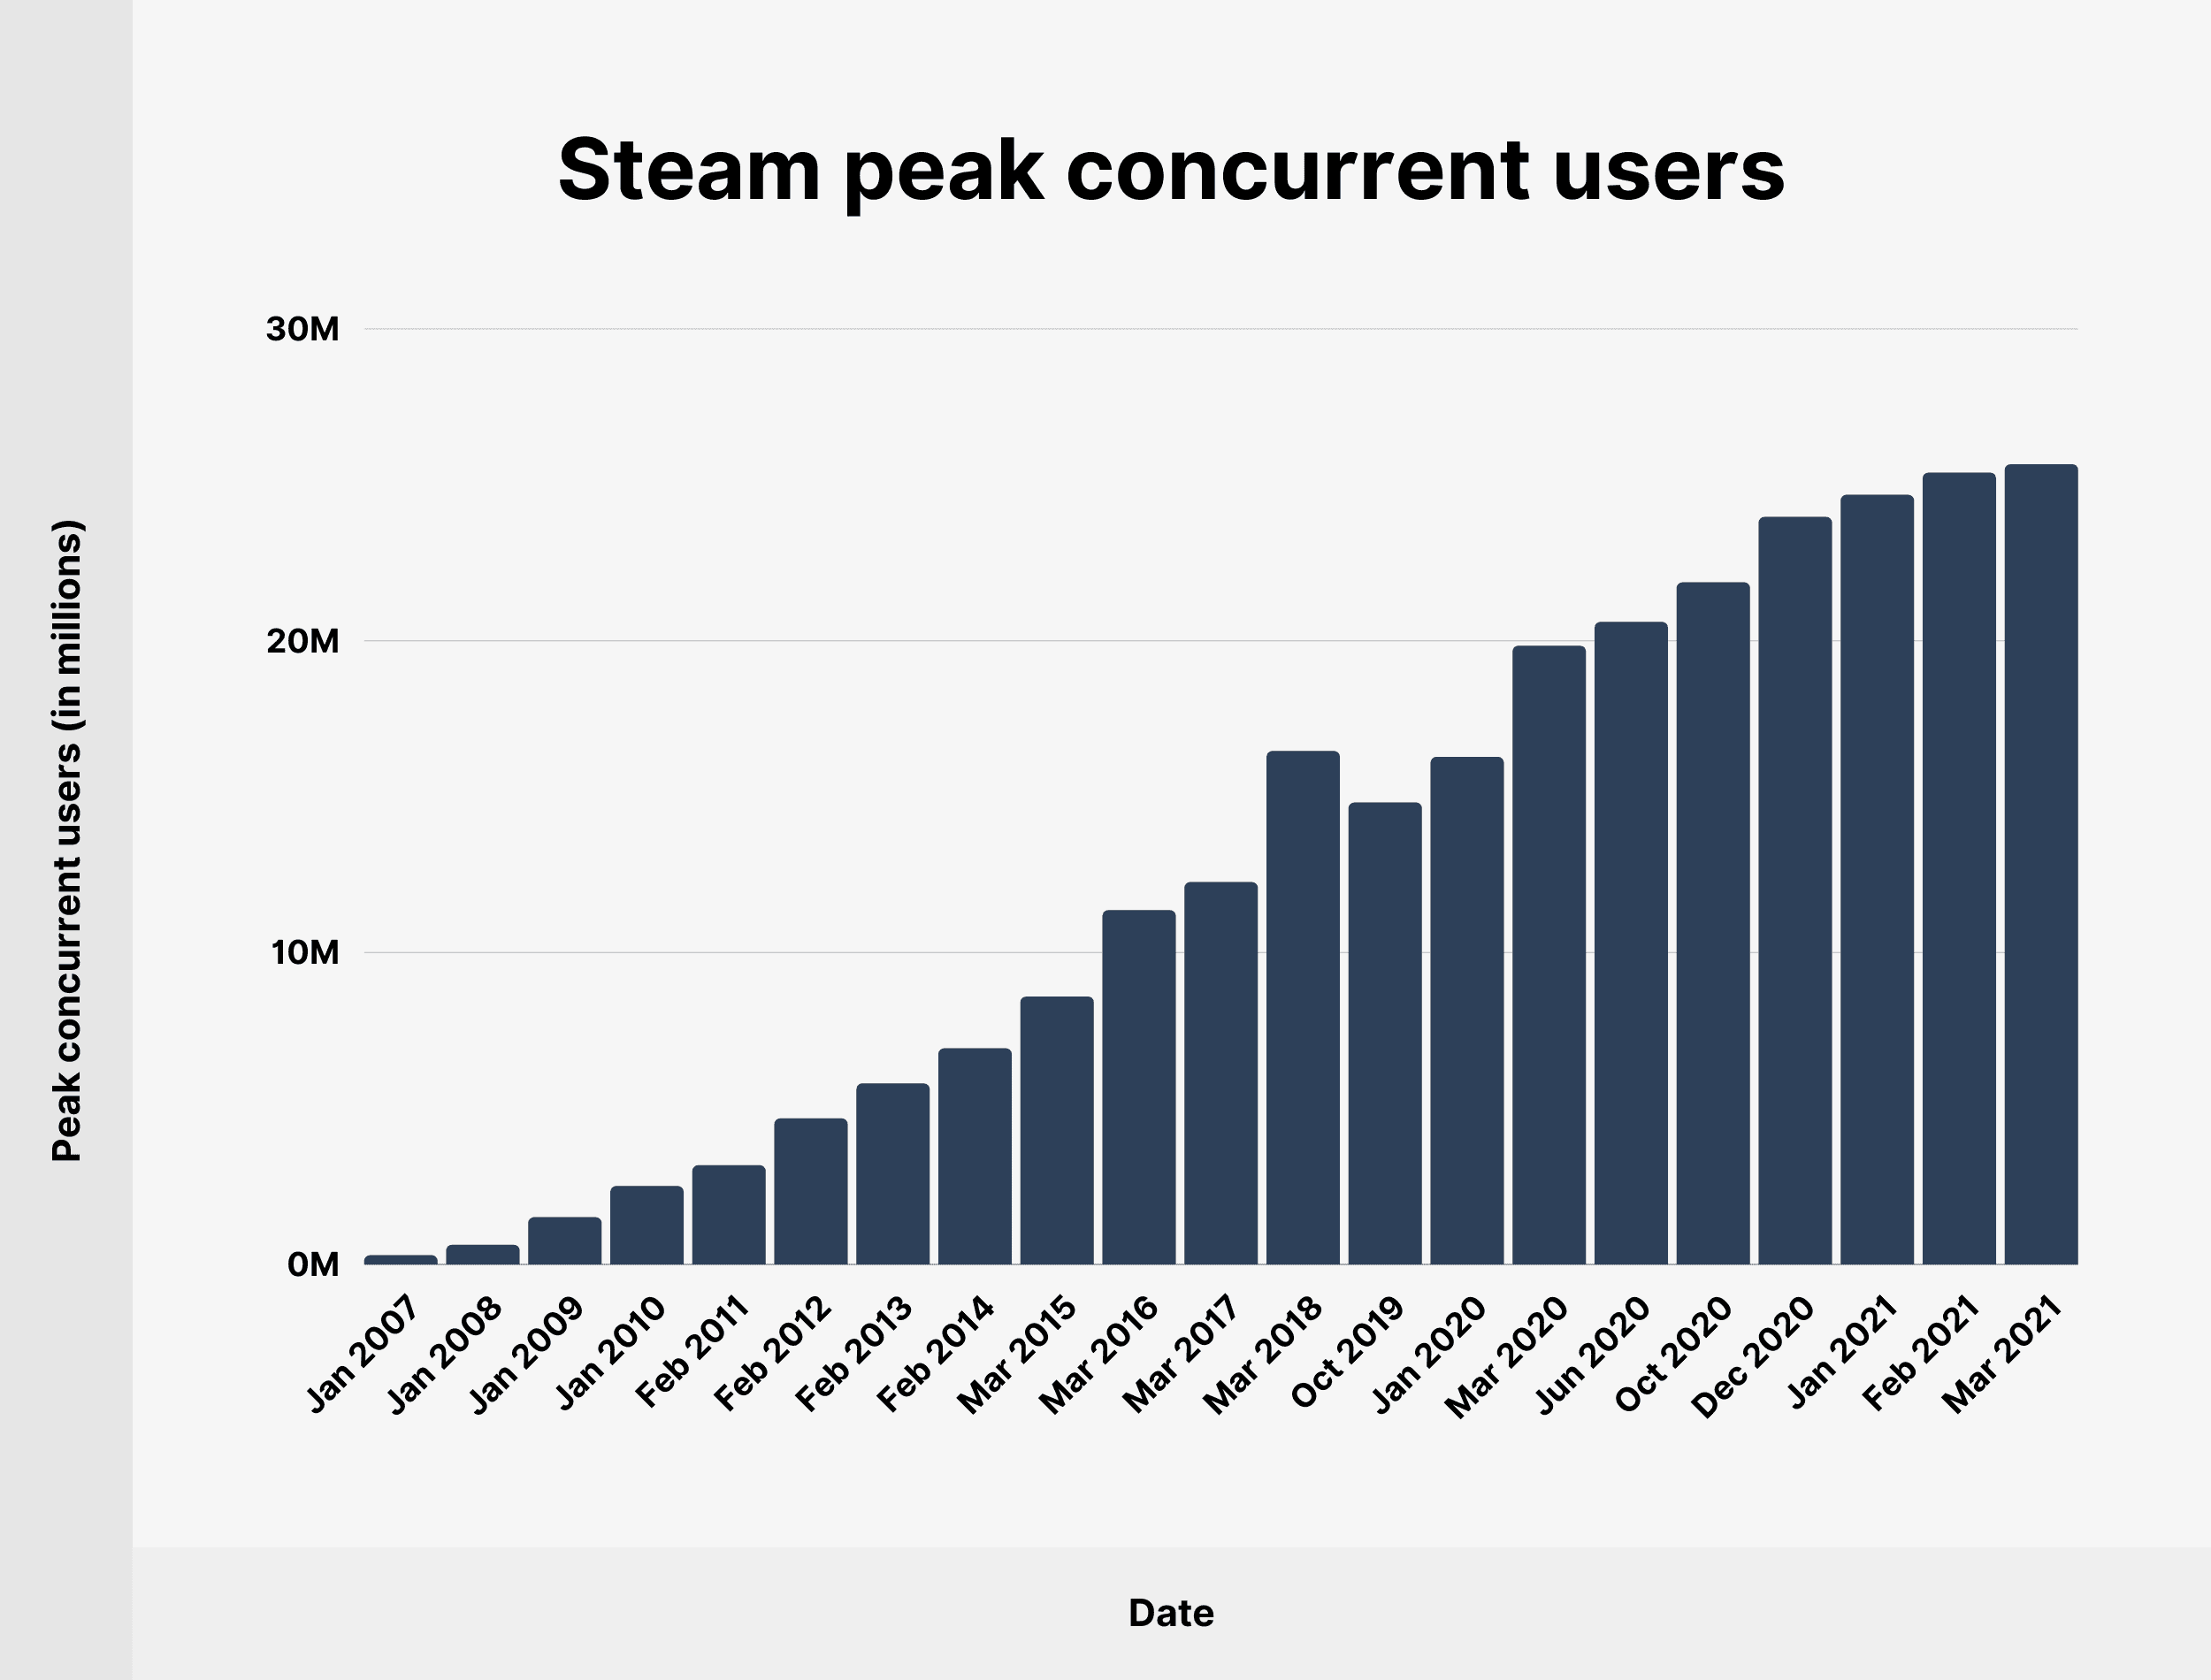 Steam peak concurrent users